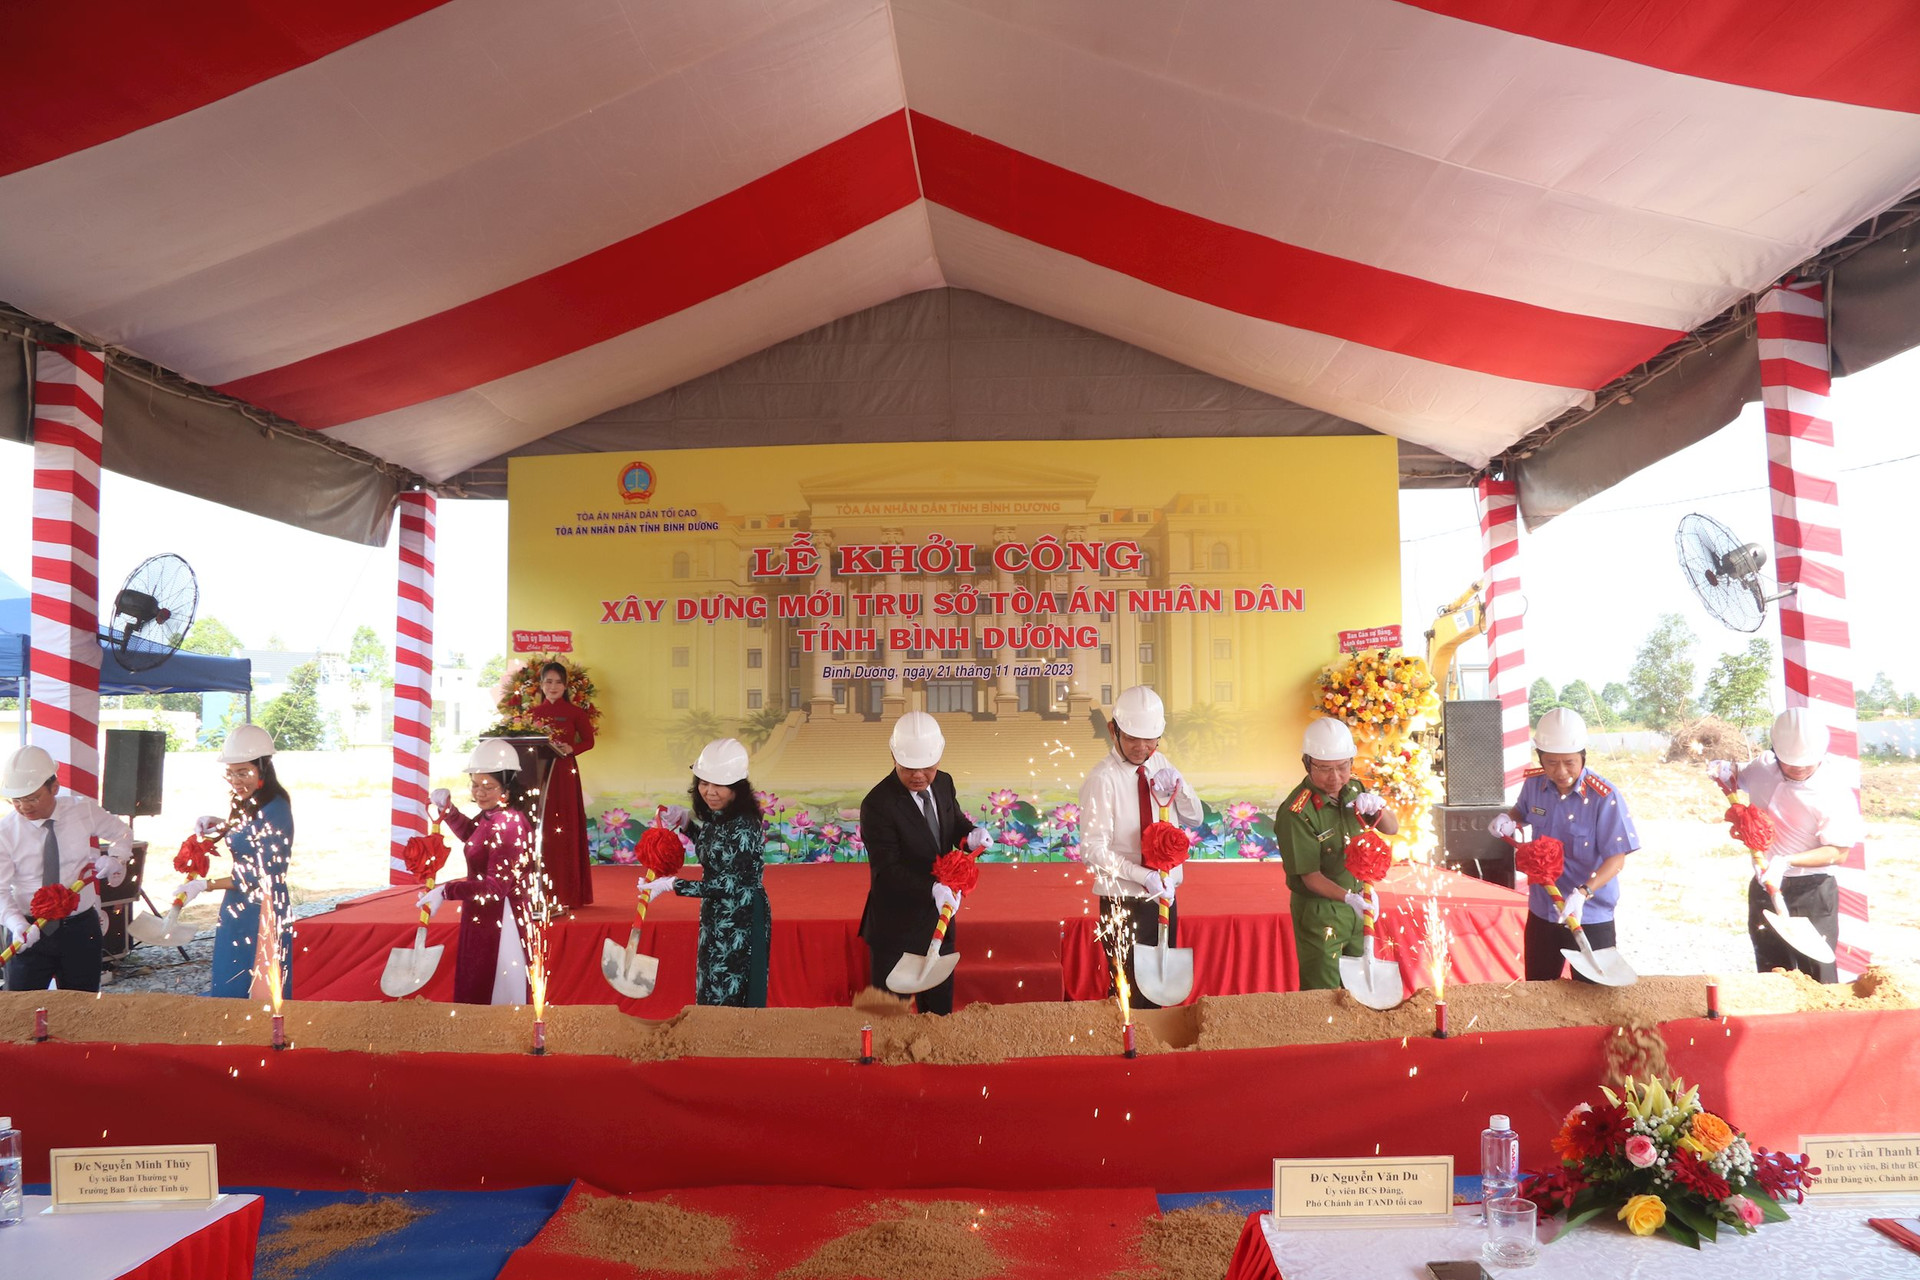 Sáng ngày 21/11, TAND tỉnh Bình Dương tổ chức Lễ khởi công xây mới Trụ sở làm việc TAND tỉnh Bình Dương